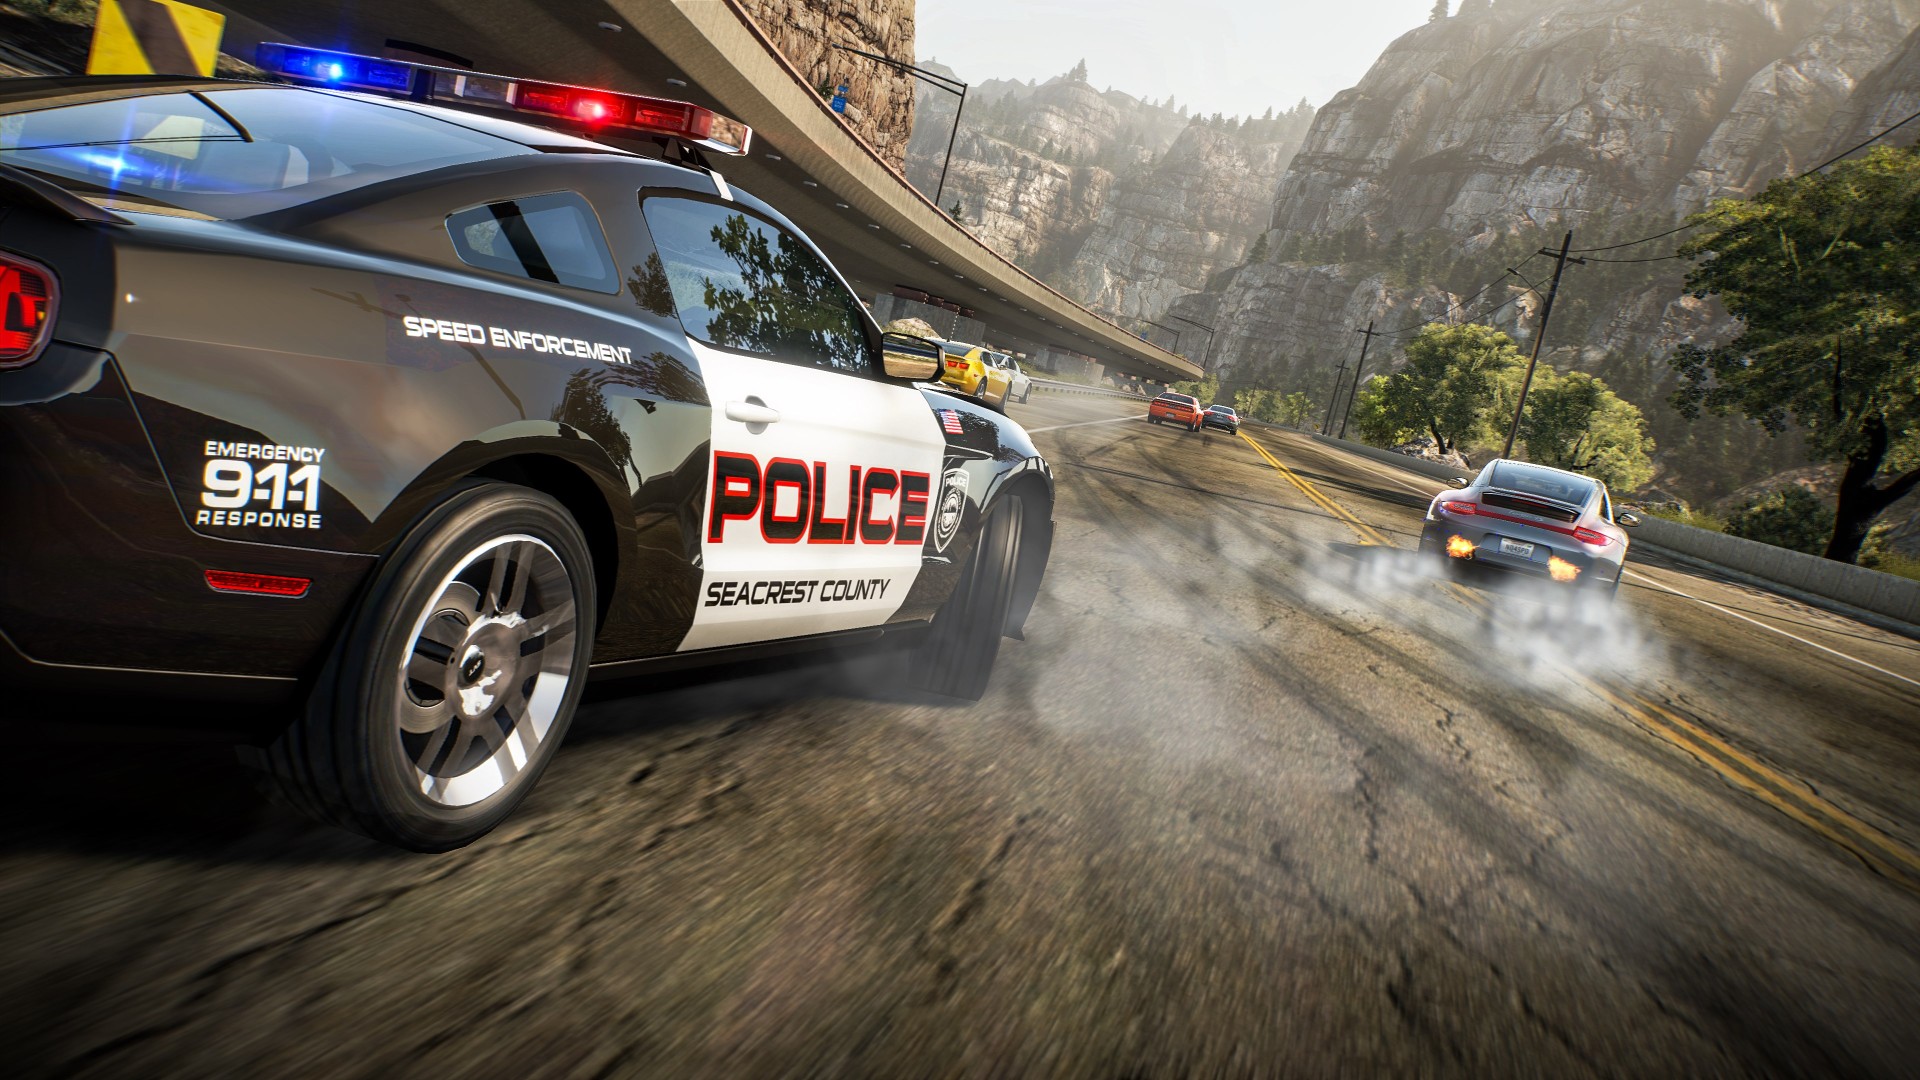 Next Week on Xbox: Neue Spiele vom 2. bis 6. November: Need for Speed: Hot Pursuit Remastered